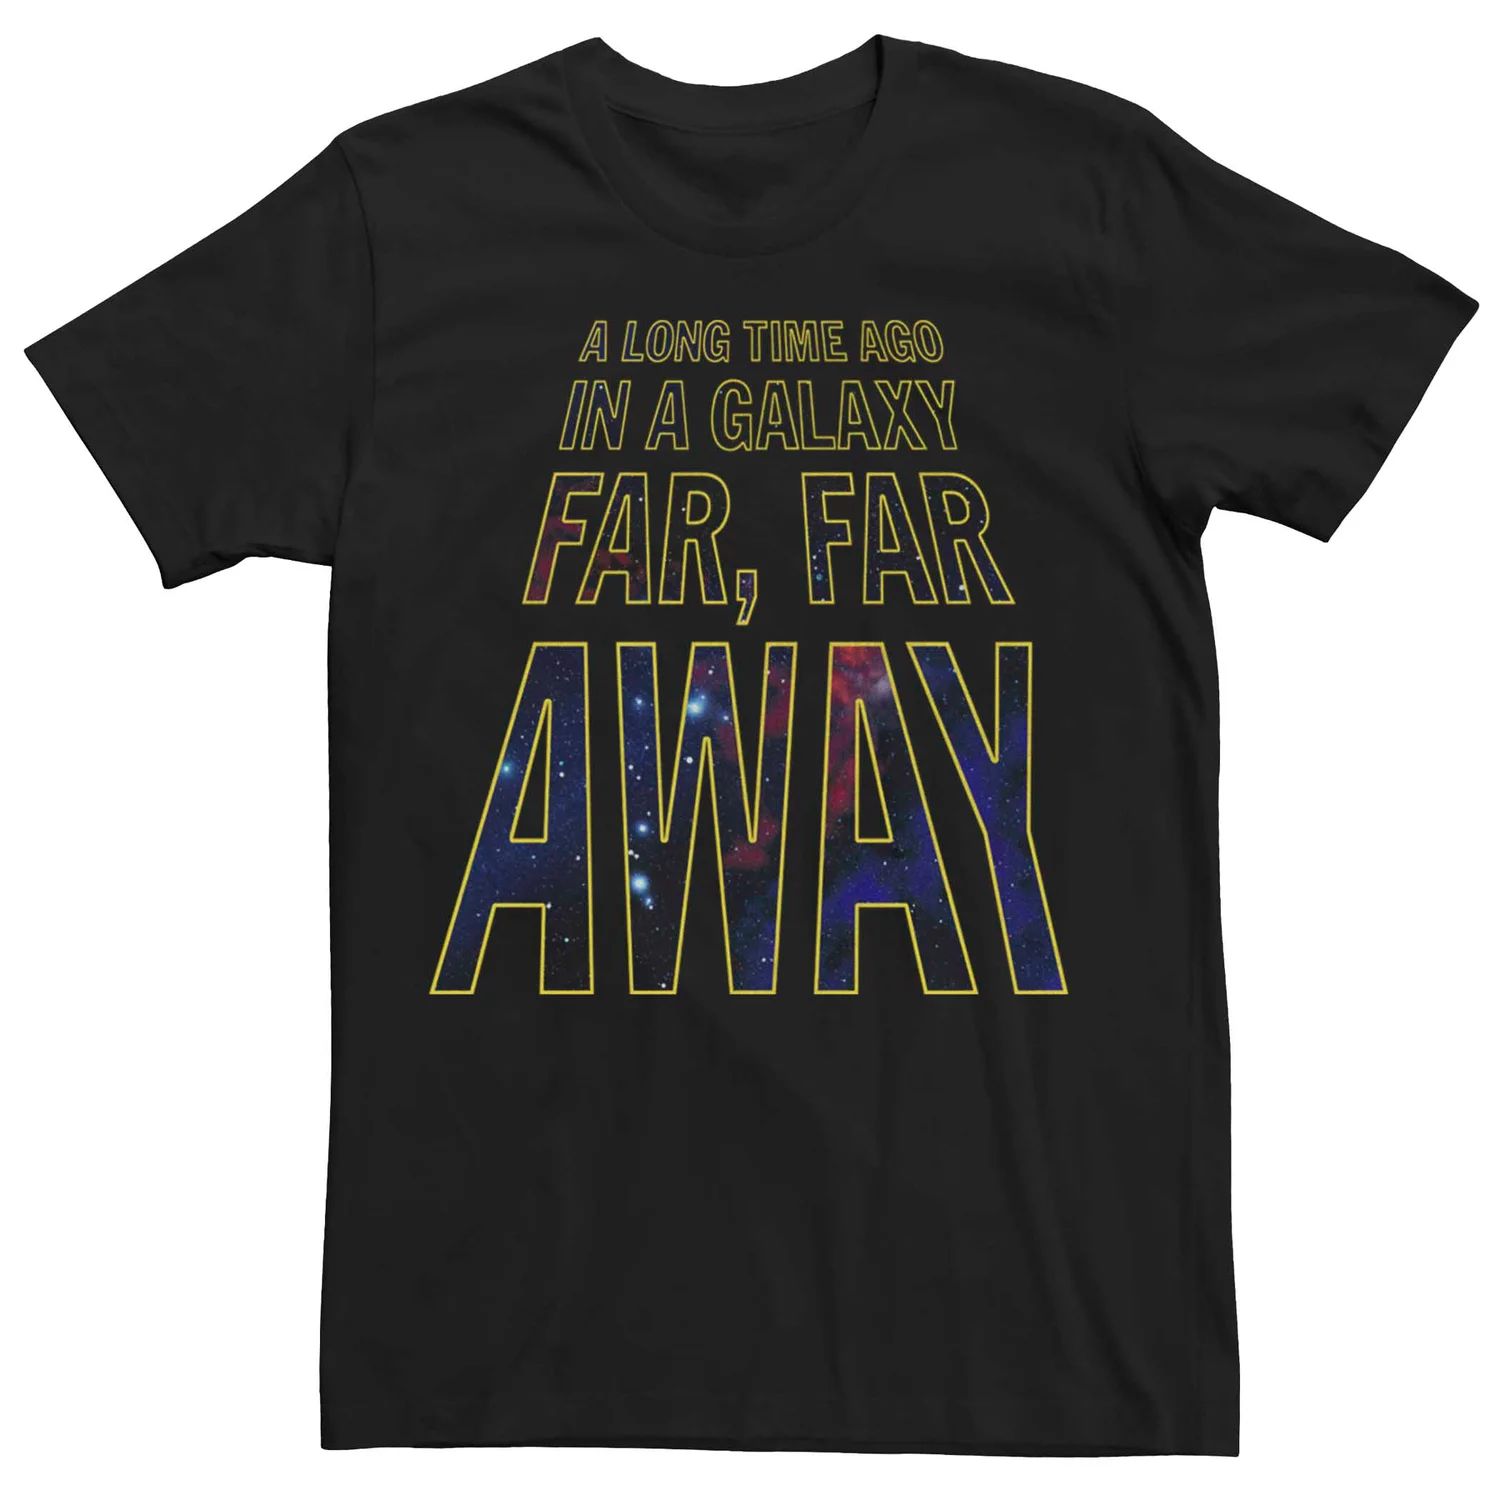 Мужская футболка с графическим рисунком и текстом «Звездные войны: Далекая-далекая галактика» Licensed Character